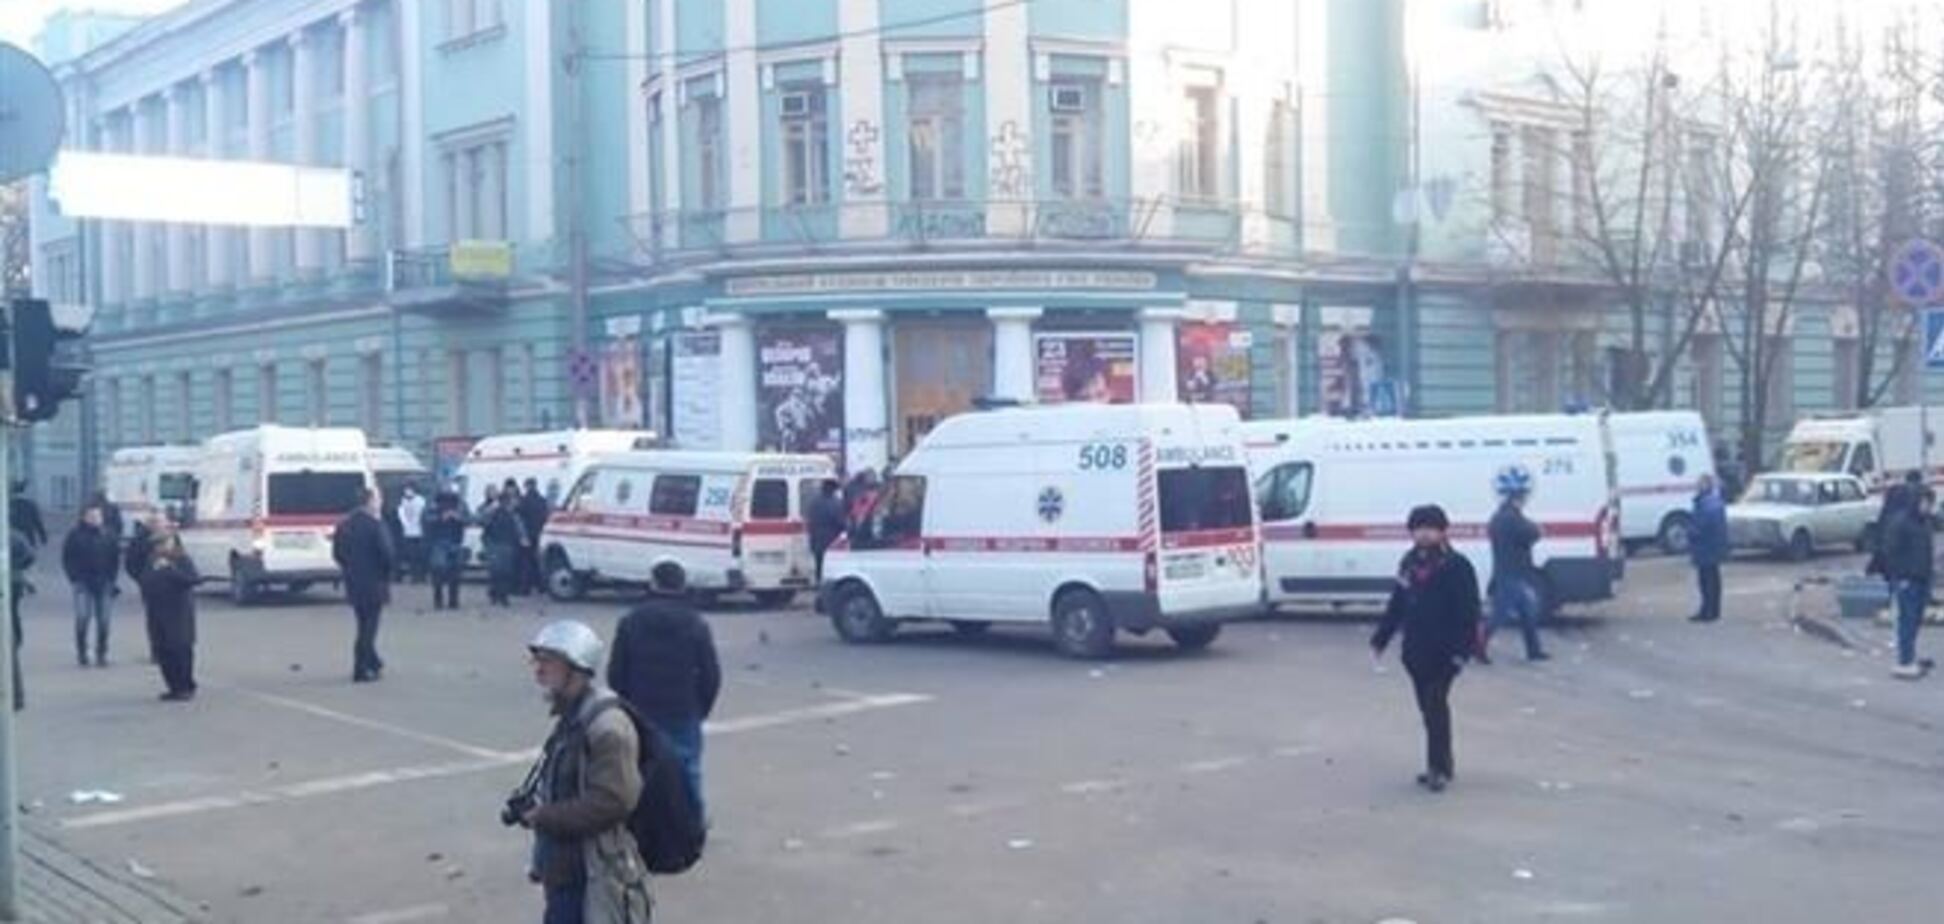 Скорая госпитализировала 17 пострадавших активистов - КГГА